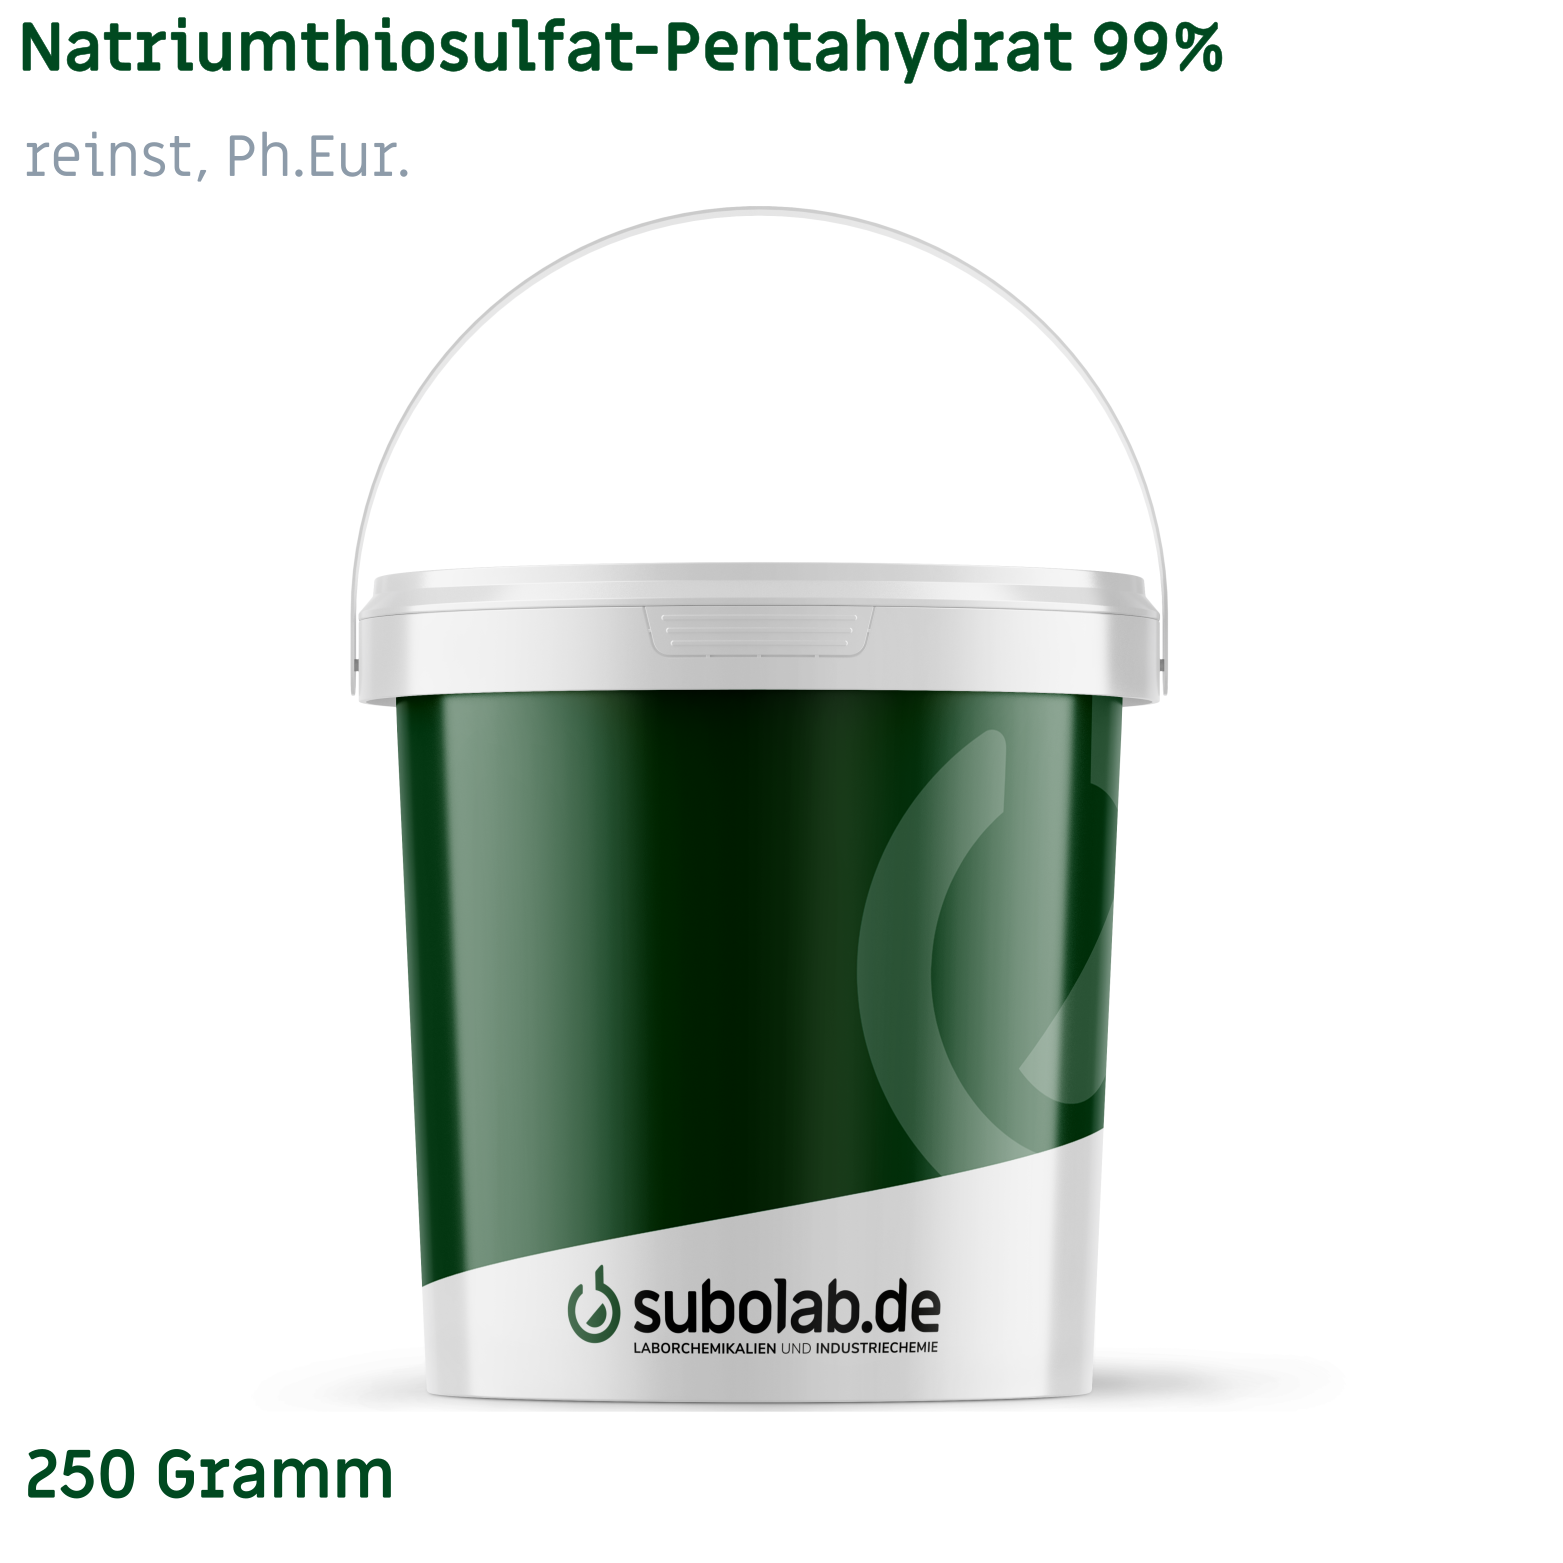 Bild von Natriumthiosulfat - Pentahydrat 99% reinst, Ph.Eur. (250 Gramm)